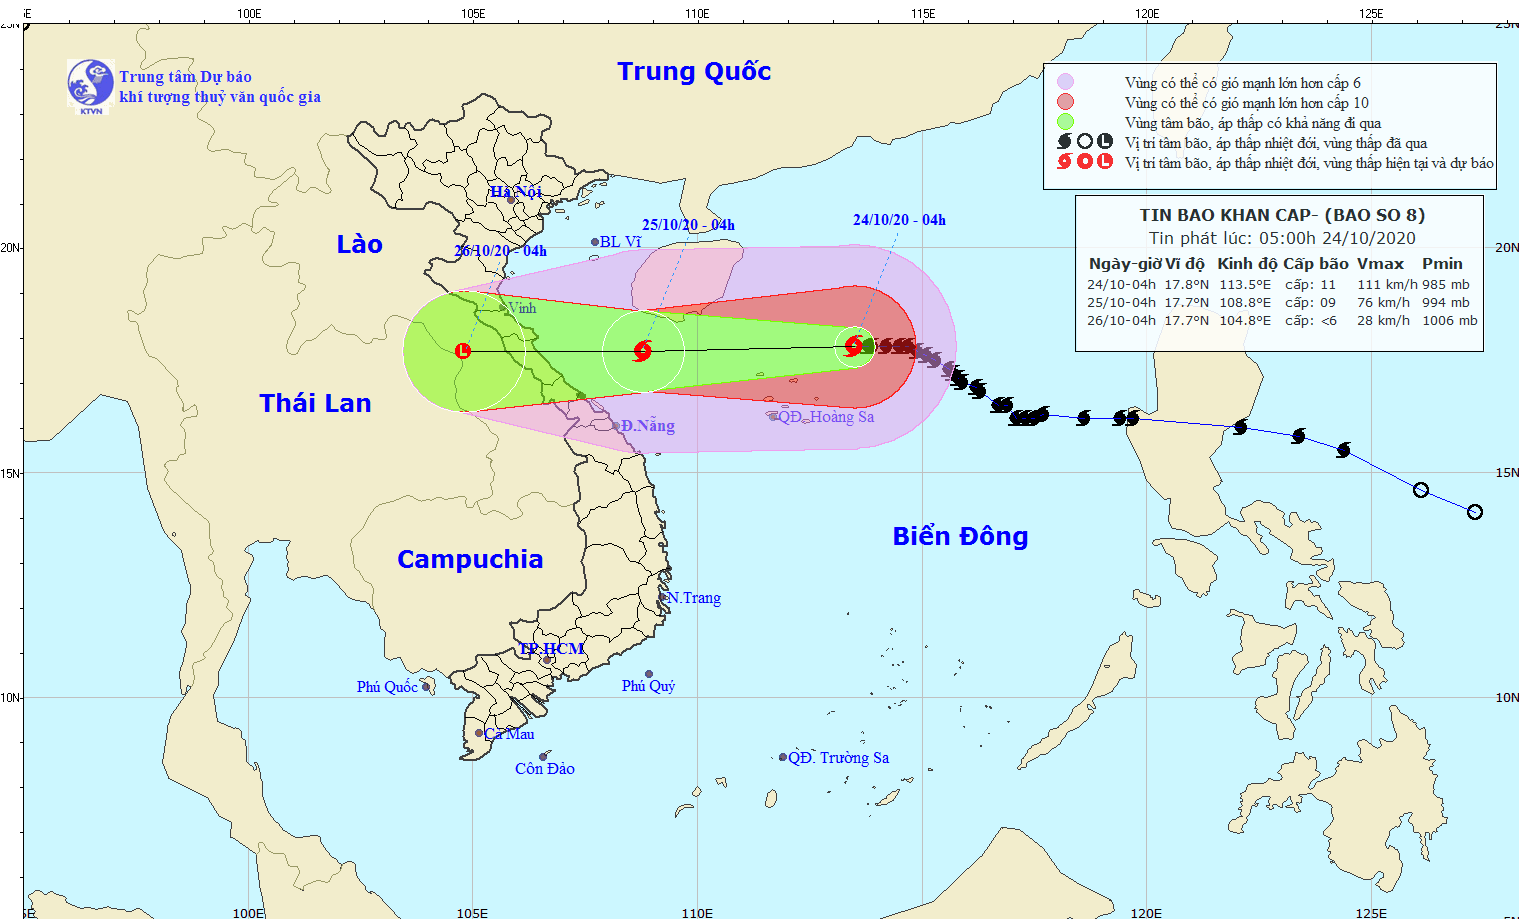 Tin bão khẩn cấp cơn bão số 8 tại Biển Đông